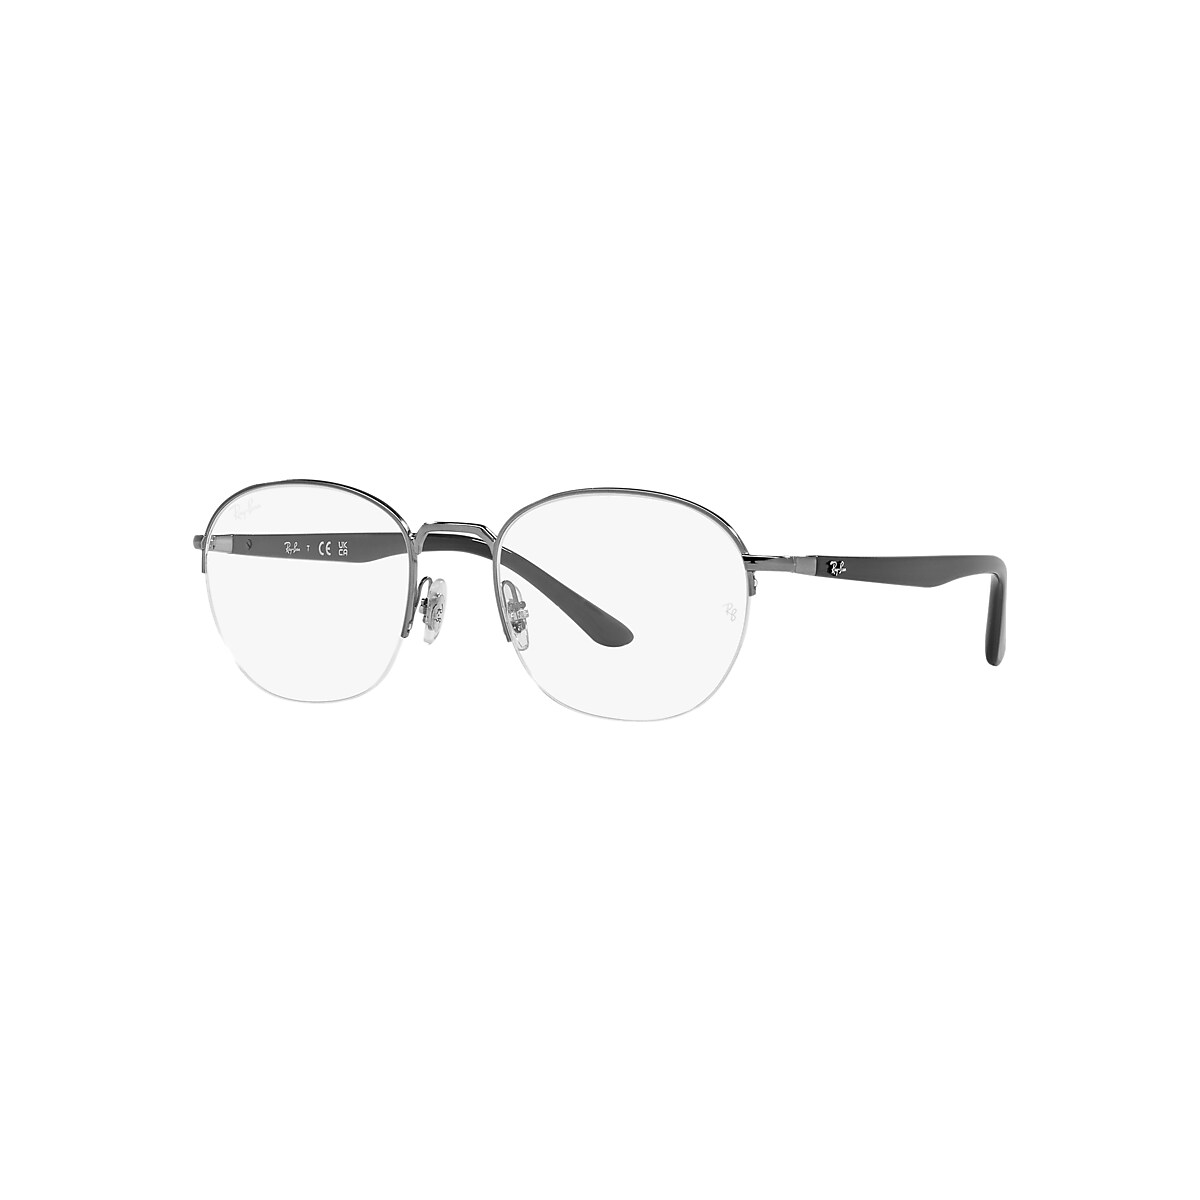 RB6487 OPTICS Eyeglasses with Gunmetal Frame - RB6487 | Ray-Ban® US